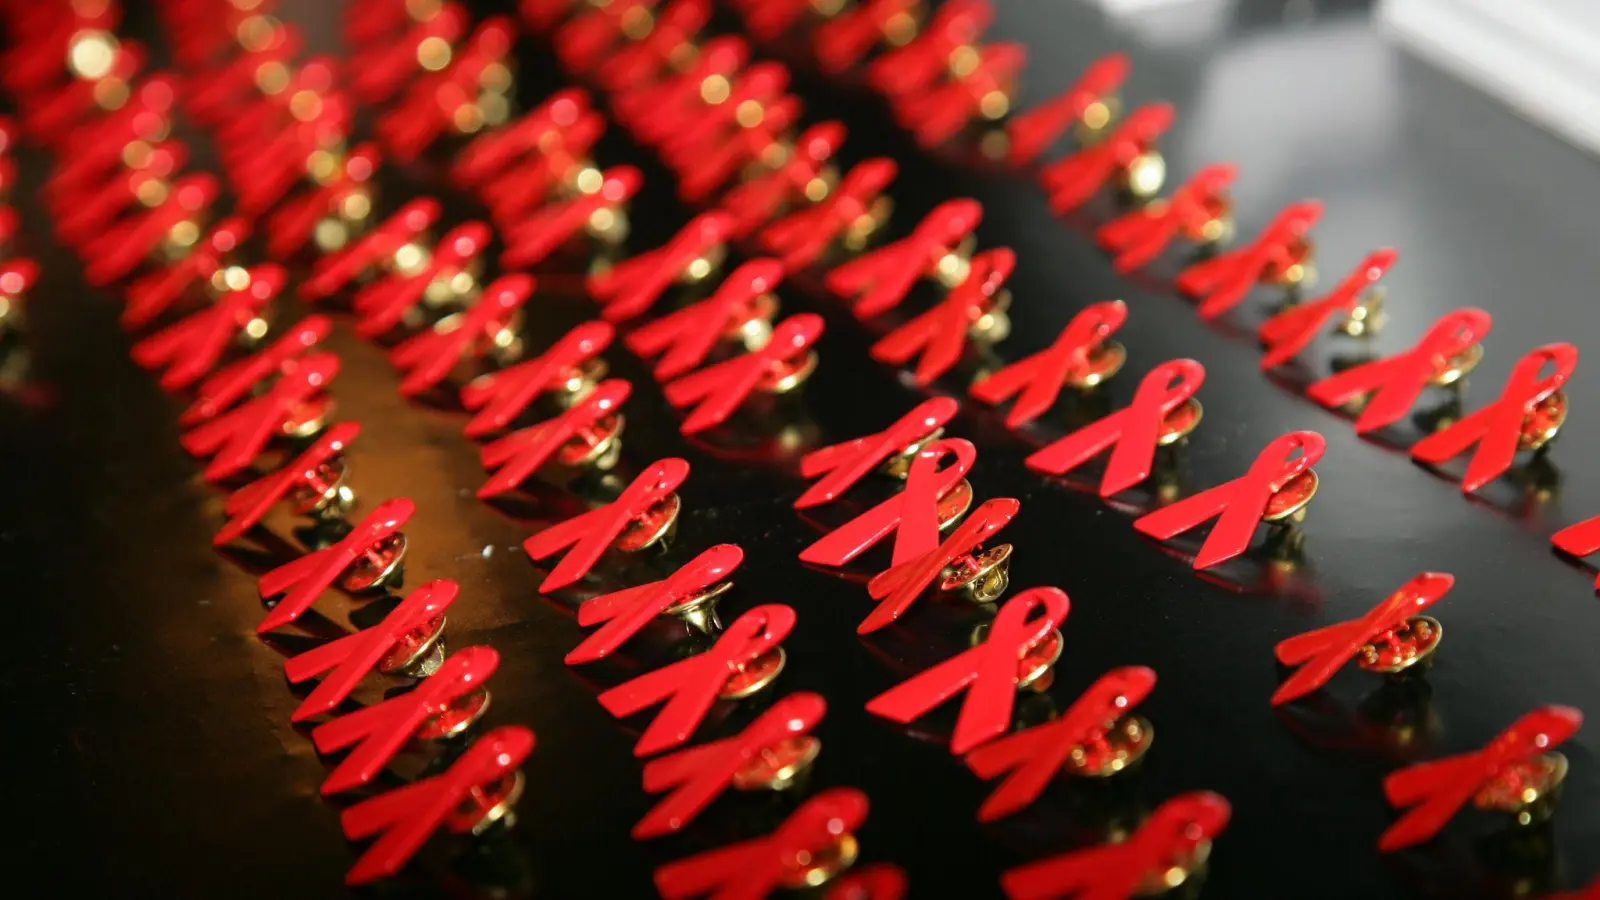 Die rote Schleife steht für den Kampf gegen Aids. (Foto: Jens Kalaene/dpa-Zentralbild/dpa)